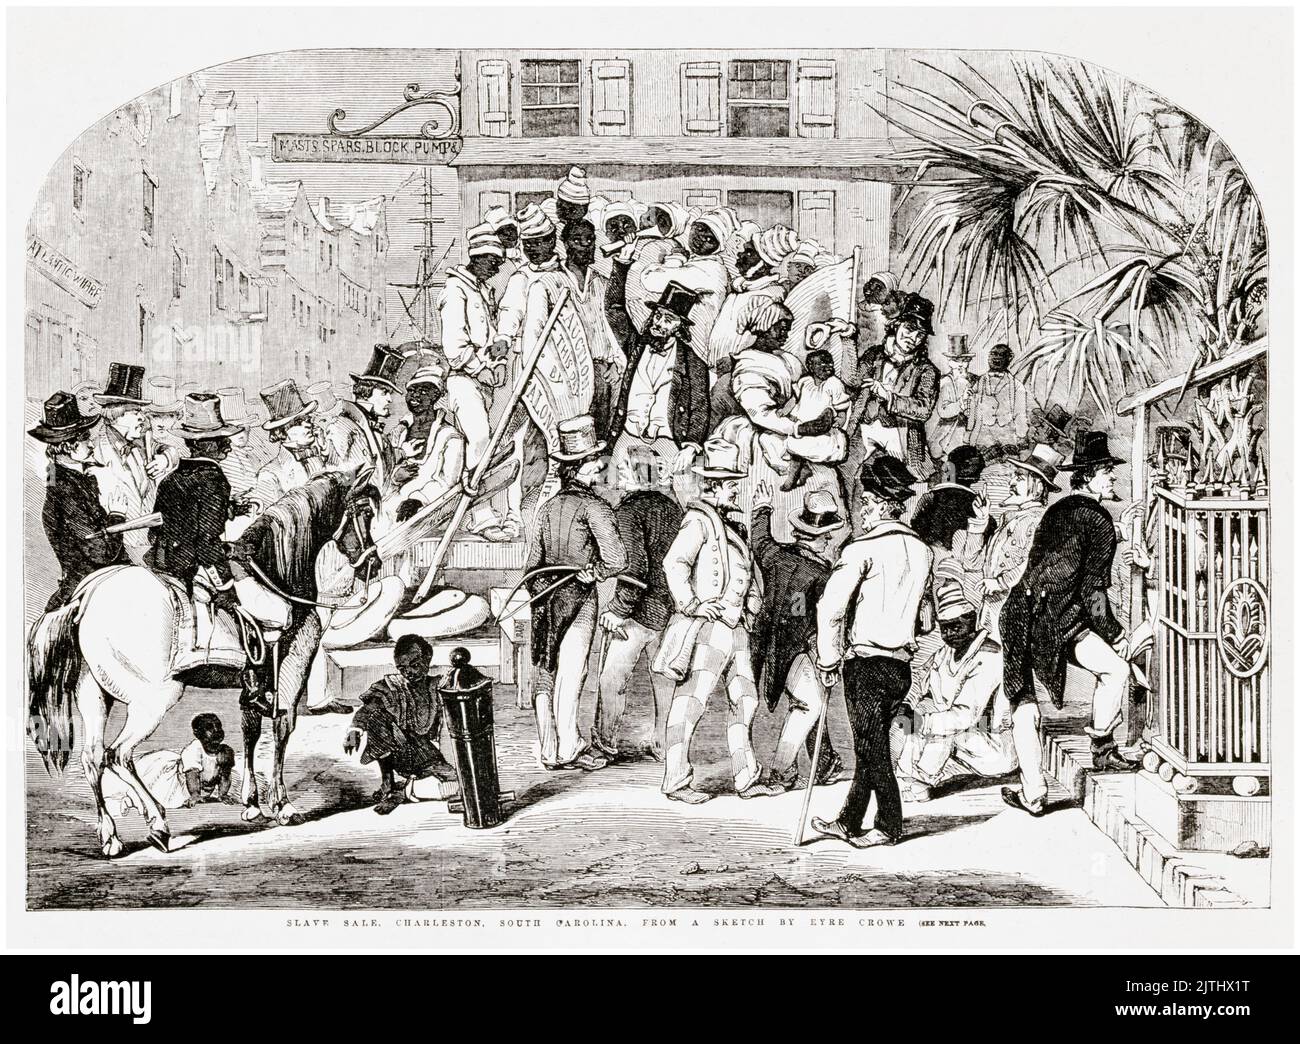 Vente d'esclaves, Charleston, Caroline du Sud, gravure par Eyre Crowe, 1856 Banque D'Images